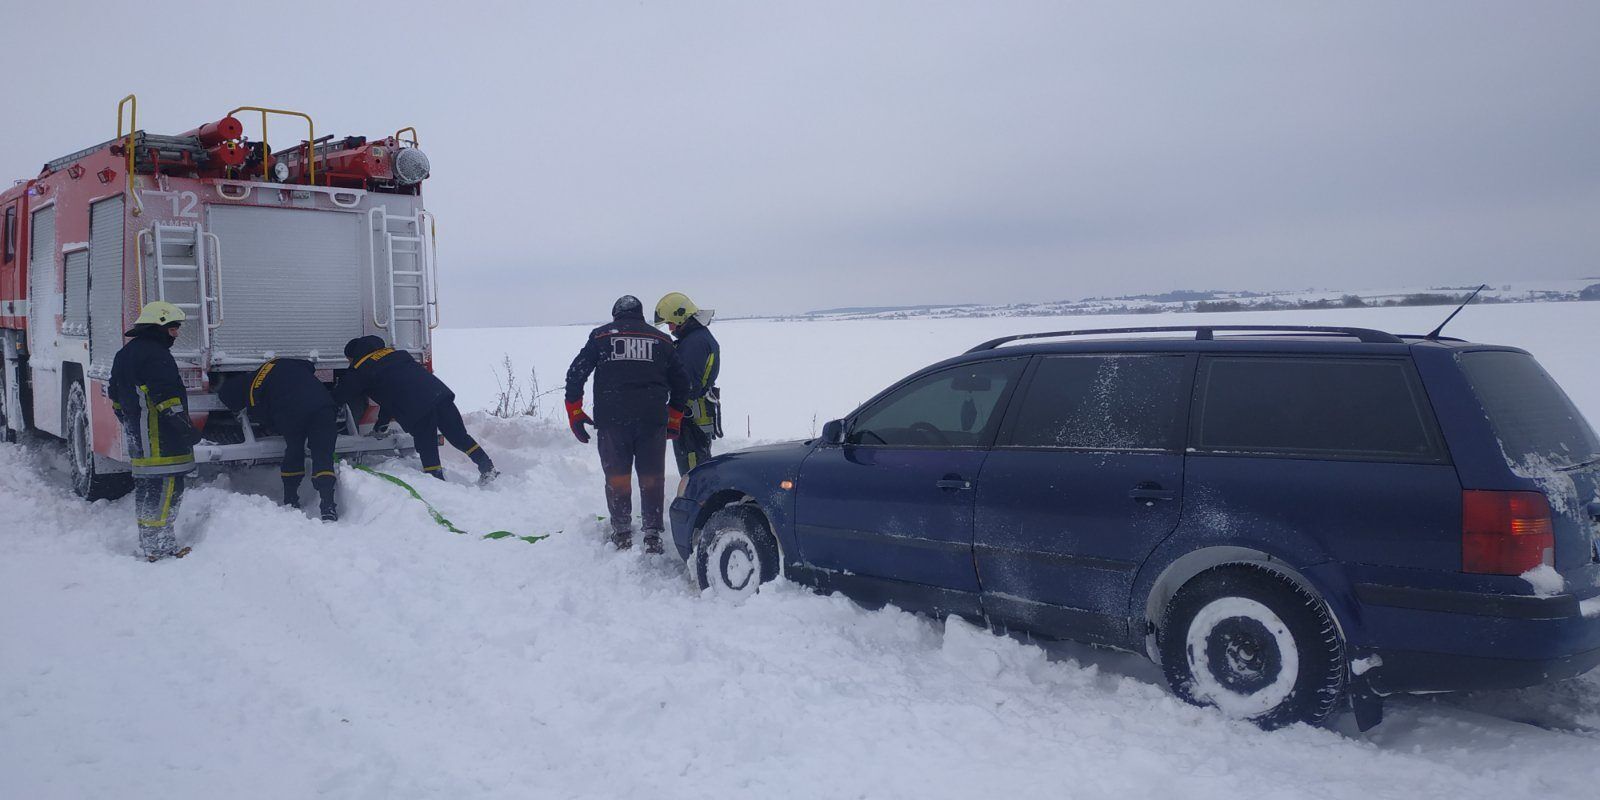 Львівська область: із снігового полону рятувальники звільнили 14 автомобілів, у яких перебувало 34 особи, з них 2 дитини